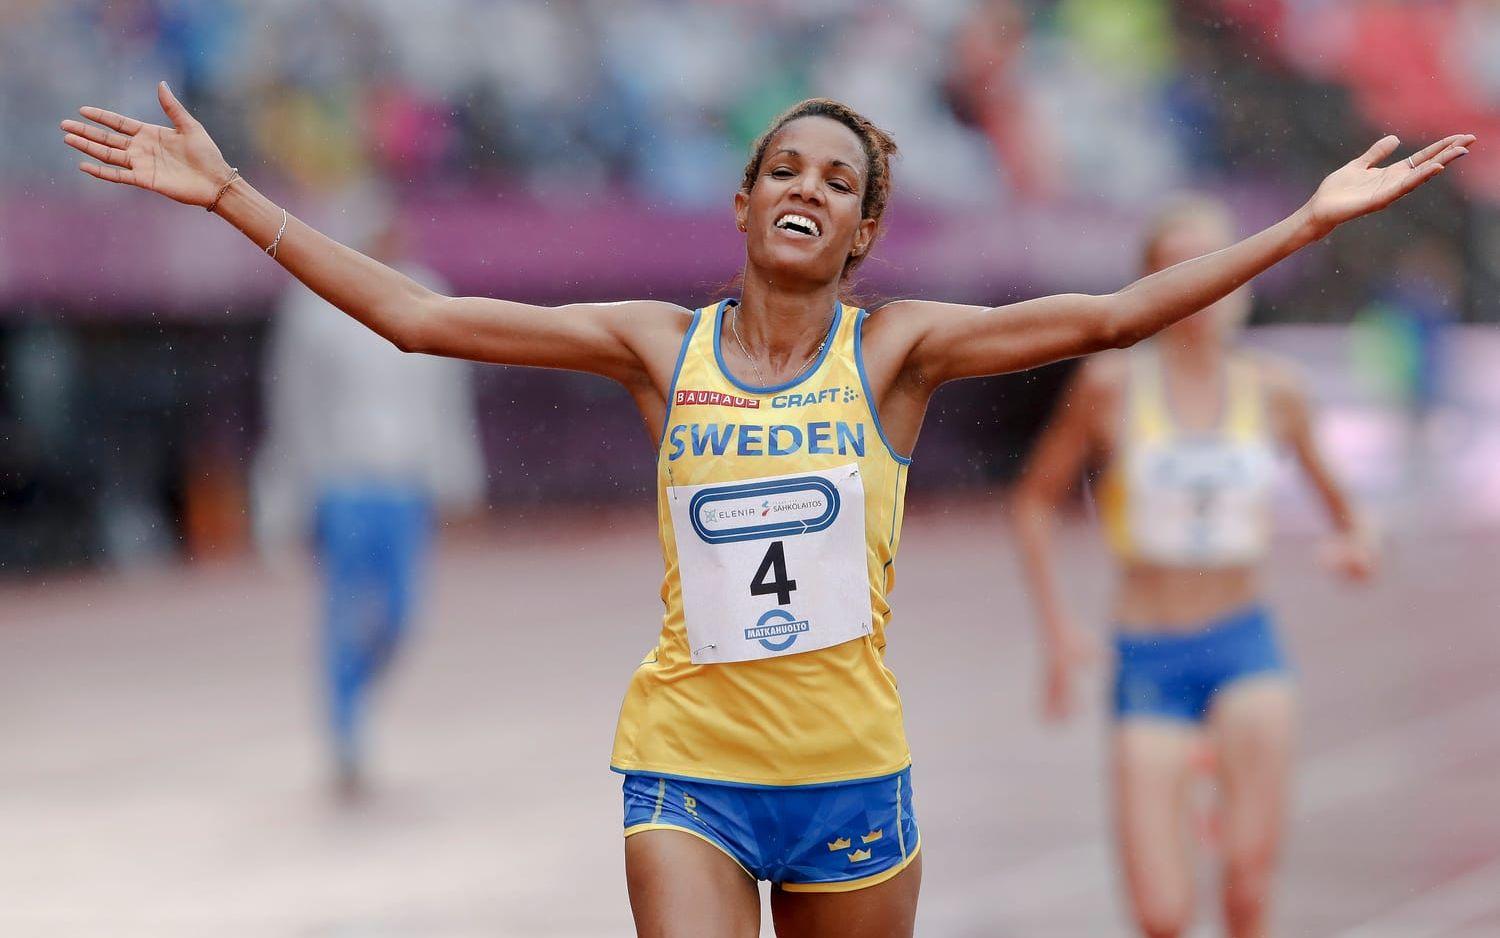 Meraf Bahta går i mål som segrare på 5 000 meter - precis som hon gjorde på dubbla distansen. Bild: Andreas L Eriksson